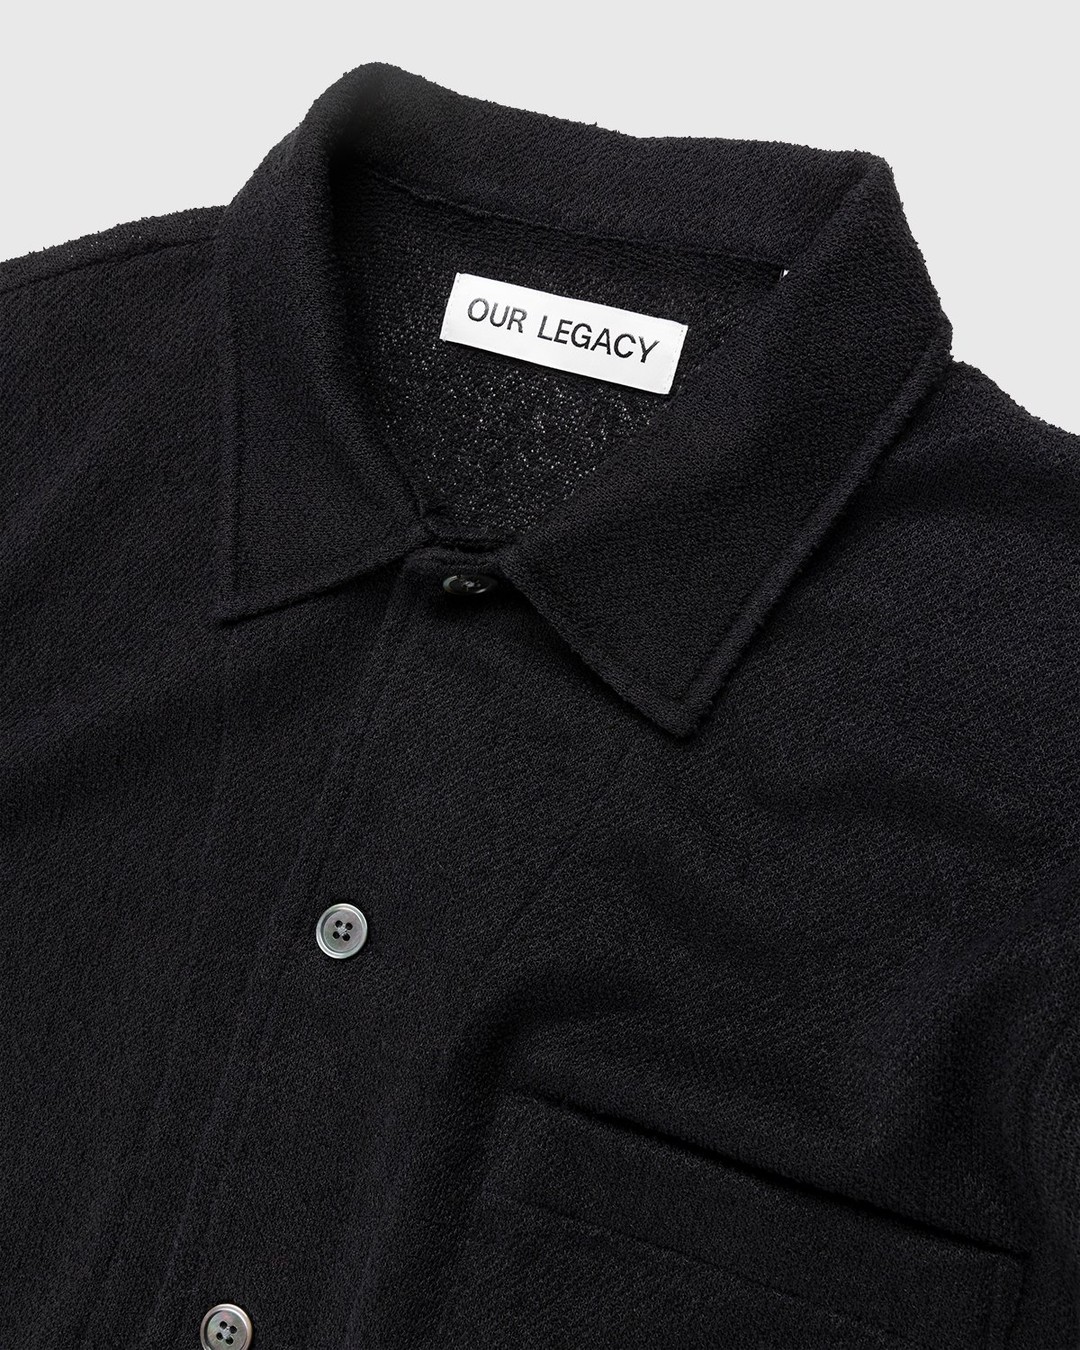 Our Legacy – Box Short Sleeve Shirt Black Boucle - Shirts - Black - Image 3